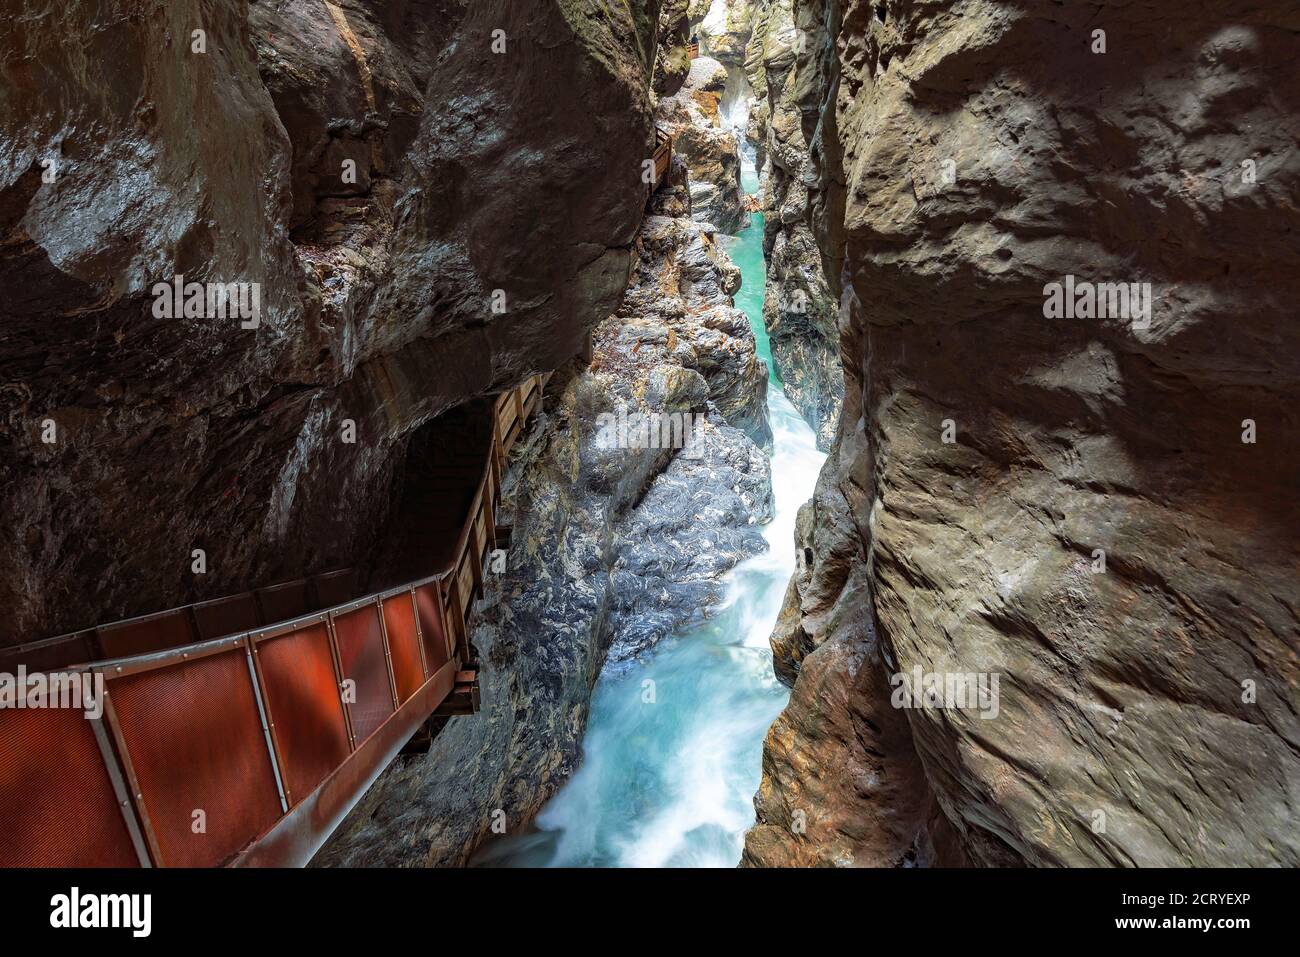 canyon du liechtenstein dans les Alpes austro-australiennes. Des cascades naturelles célèbres, des rochers géants et un incroyable canyon dans la région du Salzburger Land. ESCALIERS EN HÉLICE dans ce p Banque D'Images